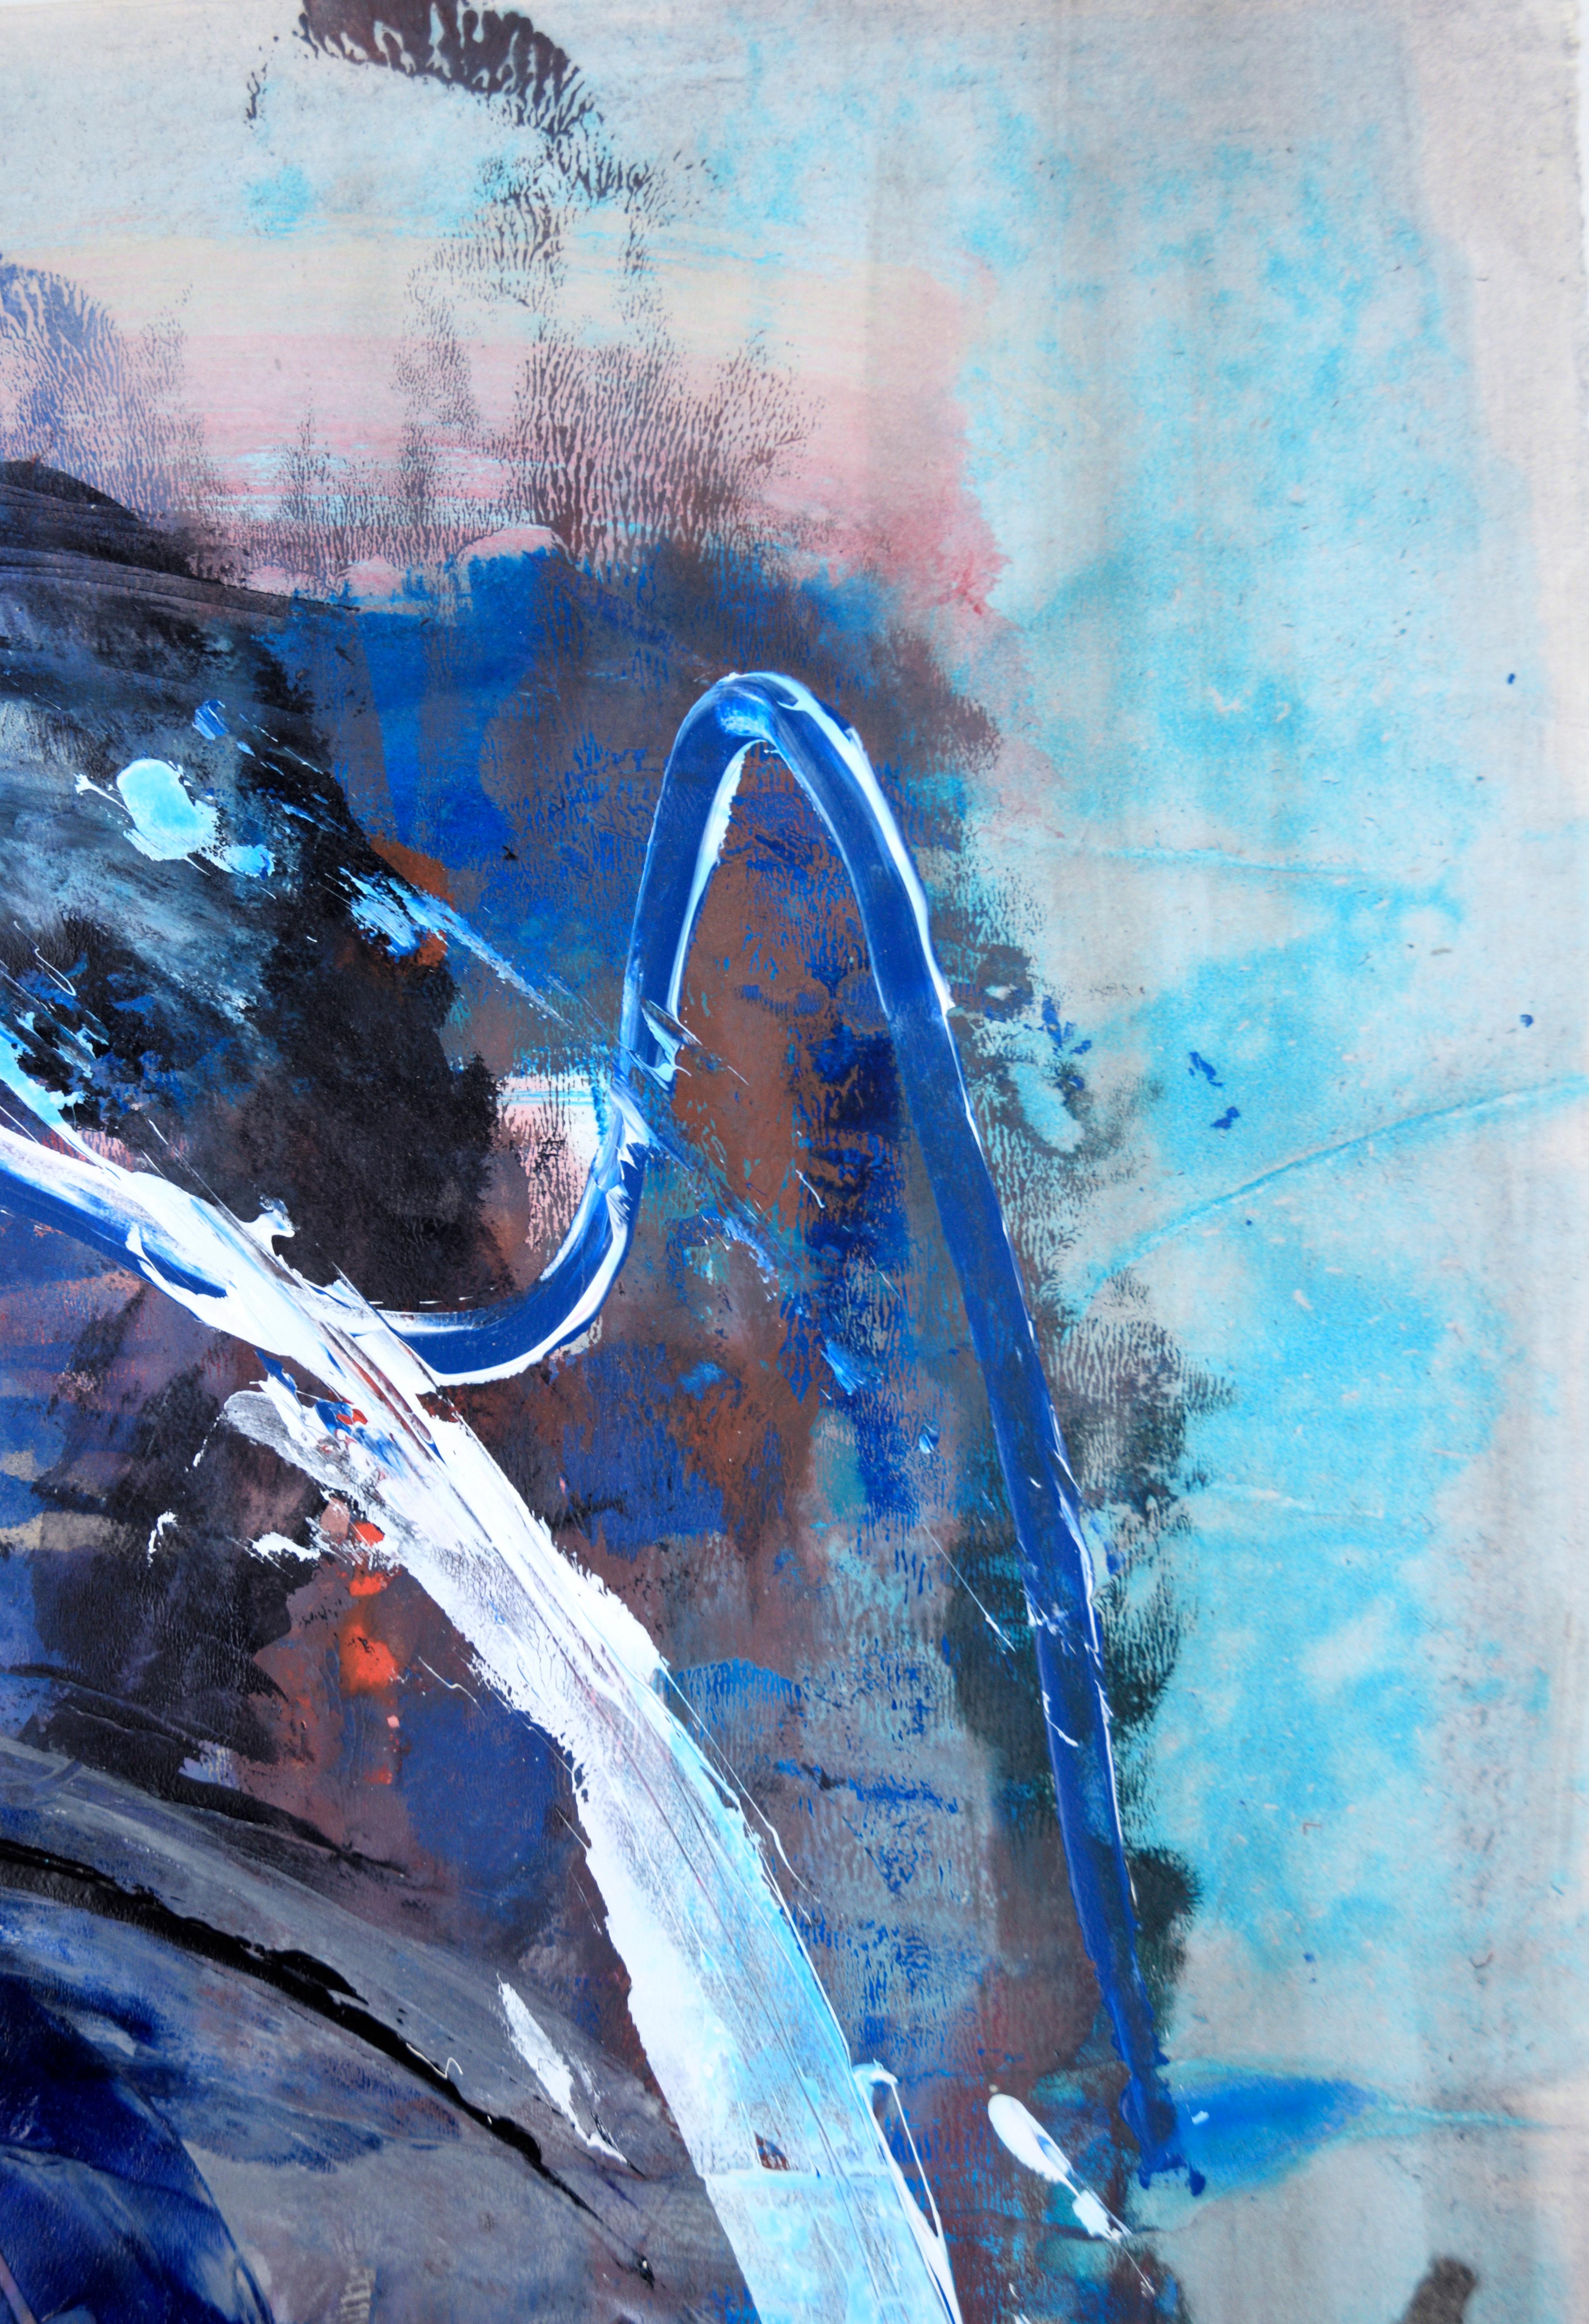 Un cas de blues - Expressionnisme abstrait 

Une peinture expressionniste abstraite dans des teintes vibrantes de bleu nageant dans de multiples couches et couleurs, créant une œuvre qui se définit par sa profondeur et sa complexité. Œuvre de